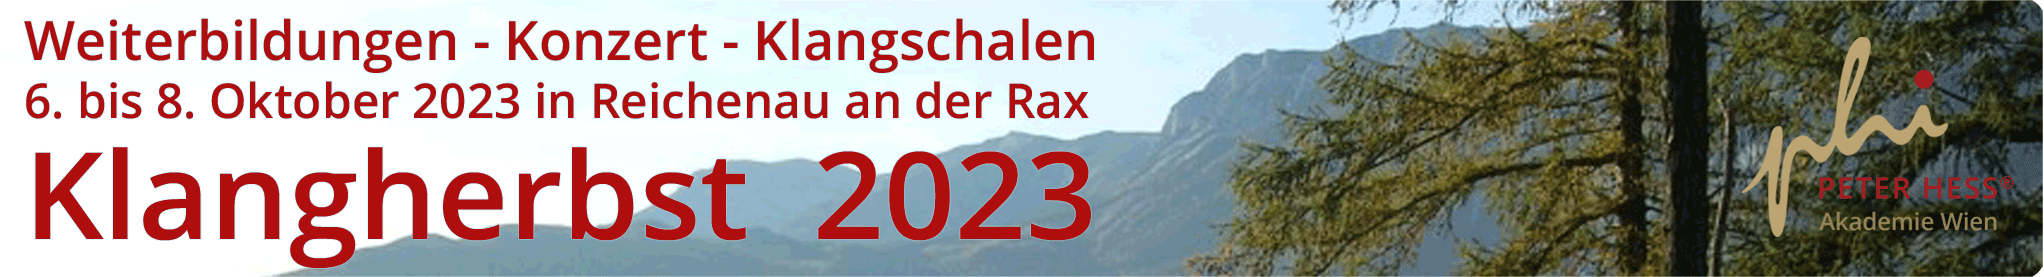 Weiterbildungen - Konzert - Klangschalen am KLANGHERBST in Reichenau im Oktober 2023